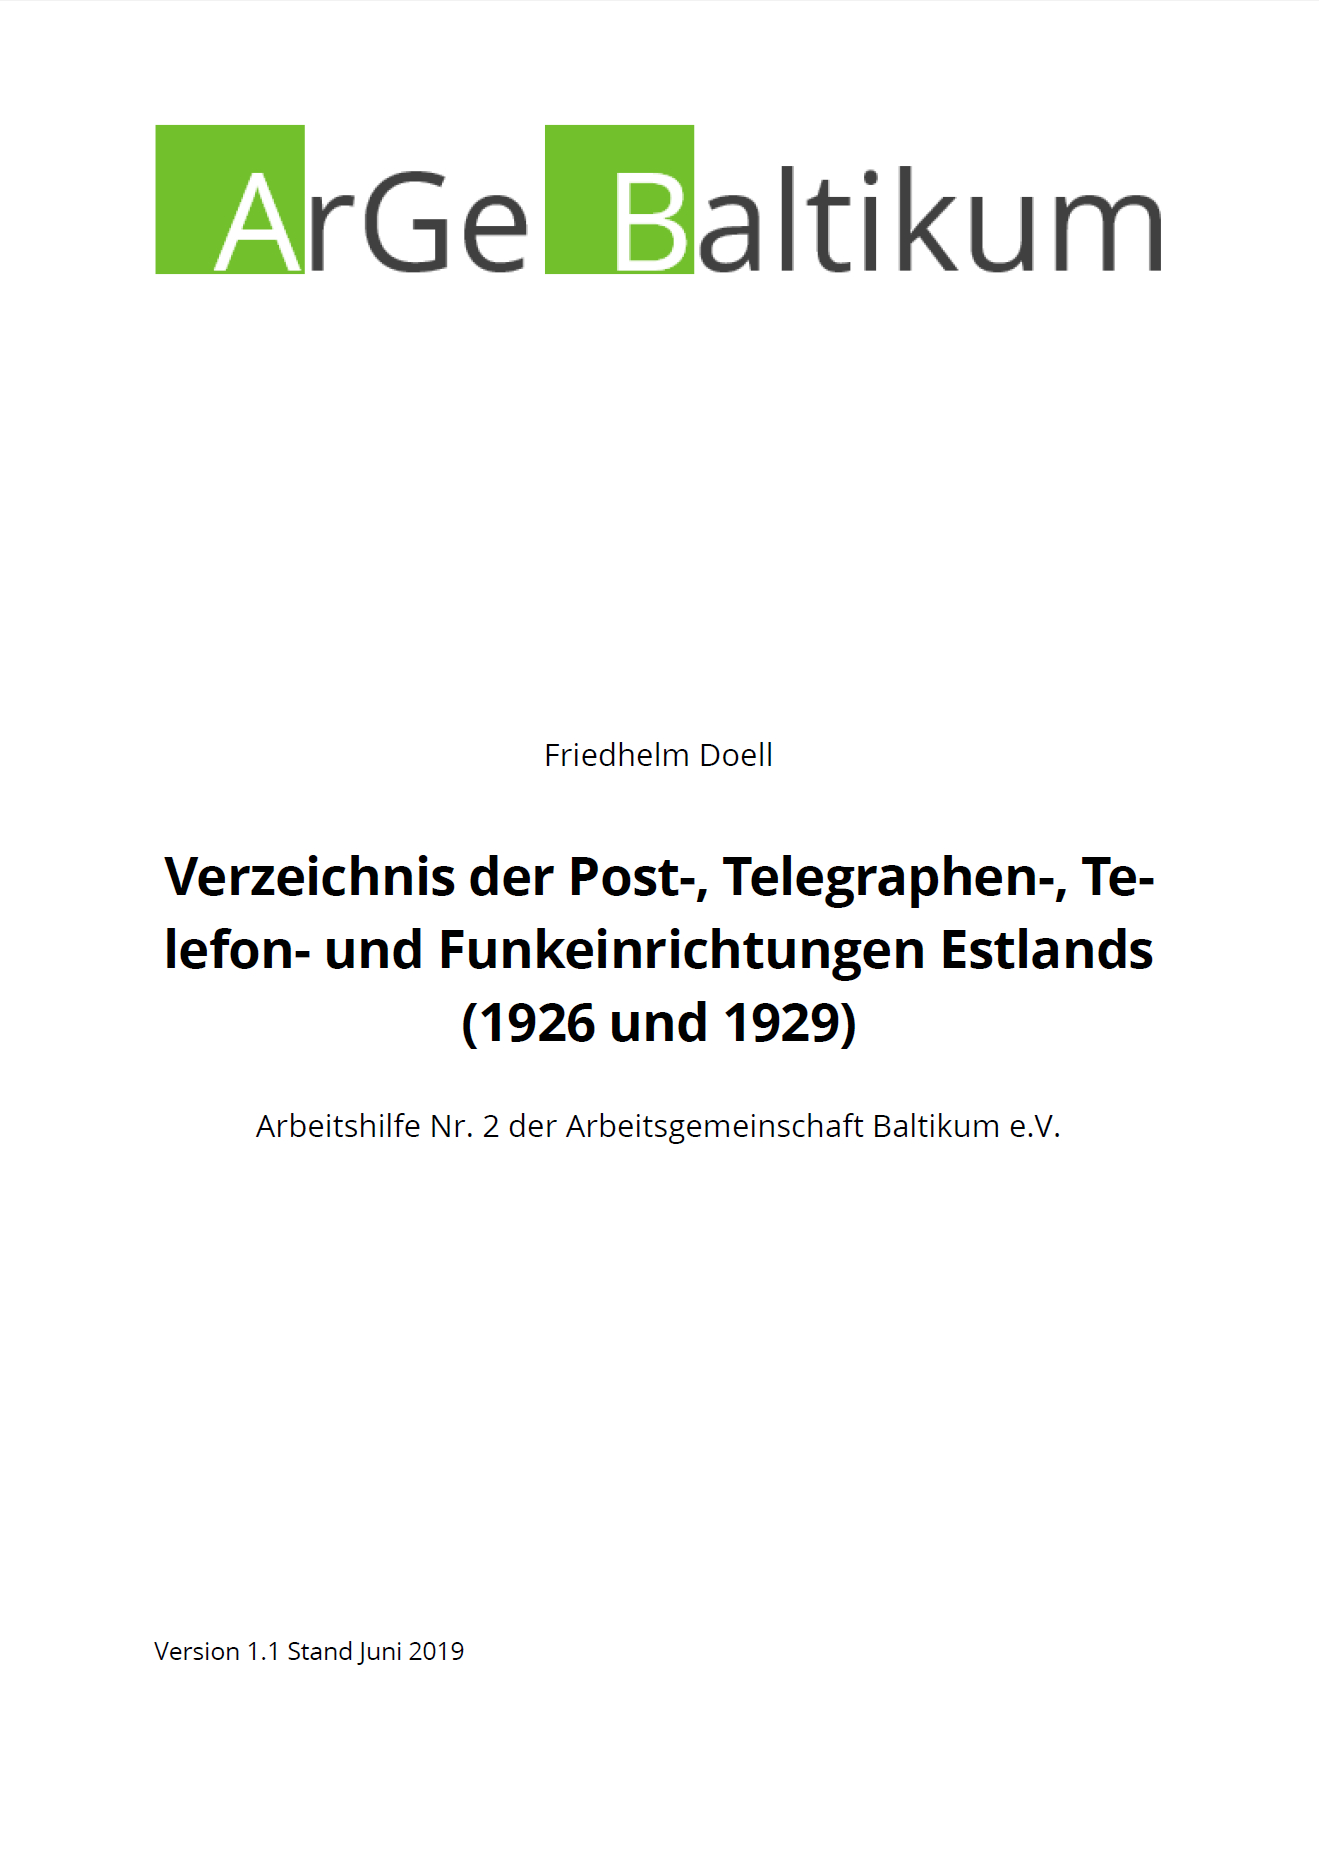 Buchtitel Arbeitshilfe Nr.2: Verzeichnis der Post-, Telegraphen-, Telefon- und Funkeinrichtungen Estlands (1926 und 1929)